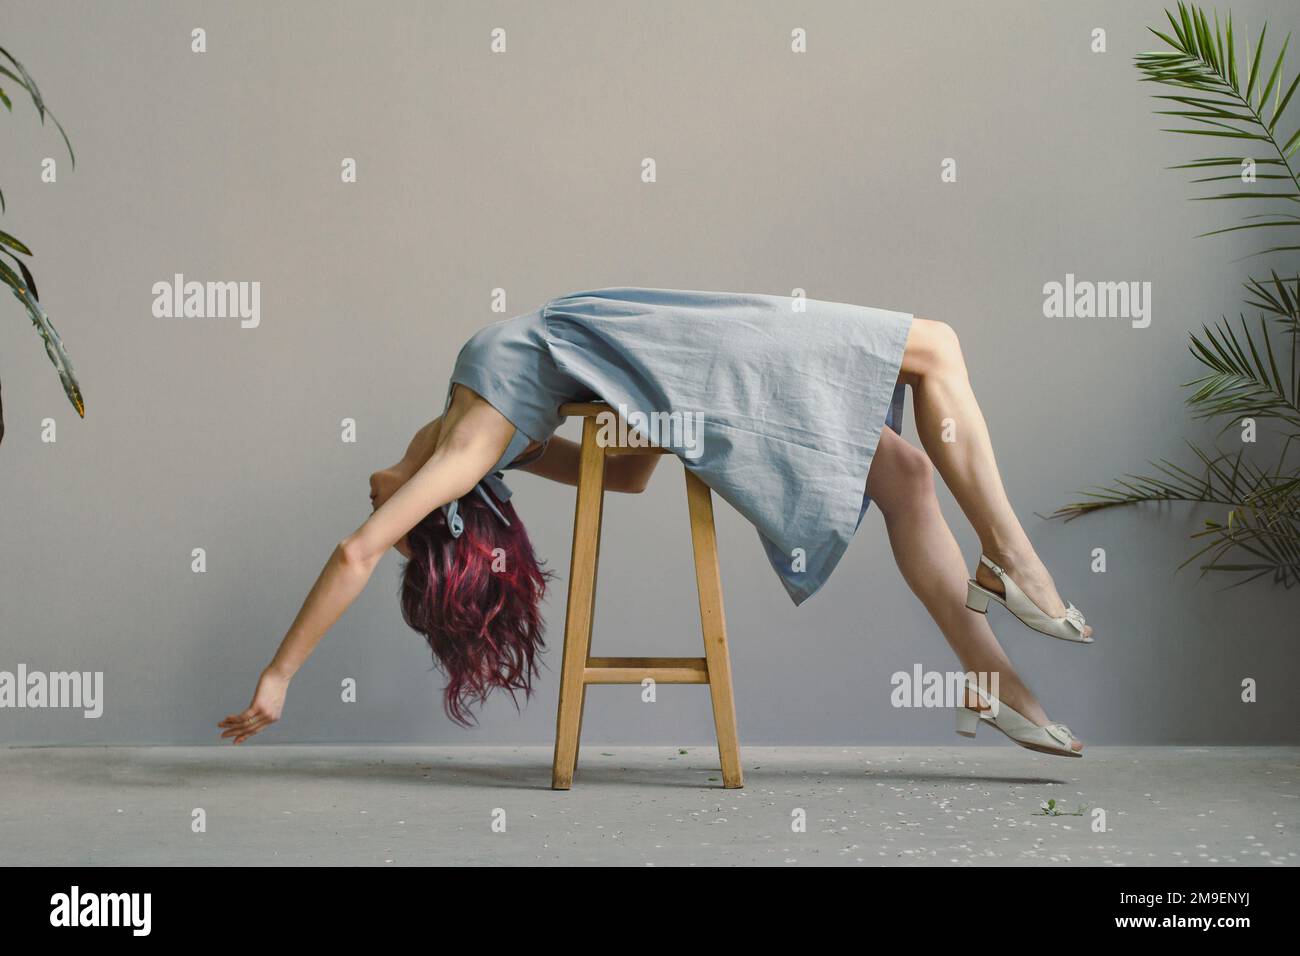 Lying down pose immagini e fotografie stock ad alta risoluzione - Alamy